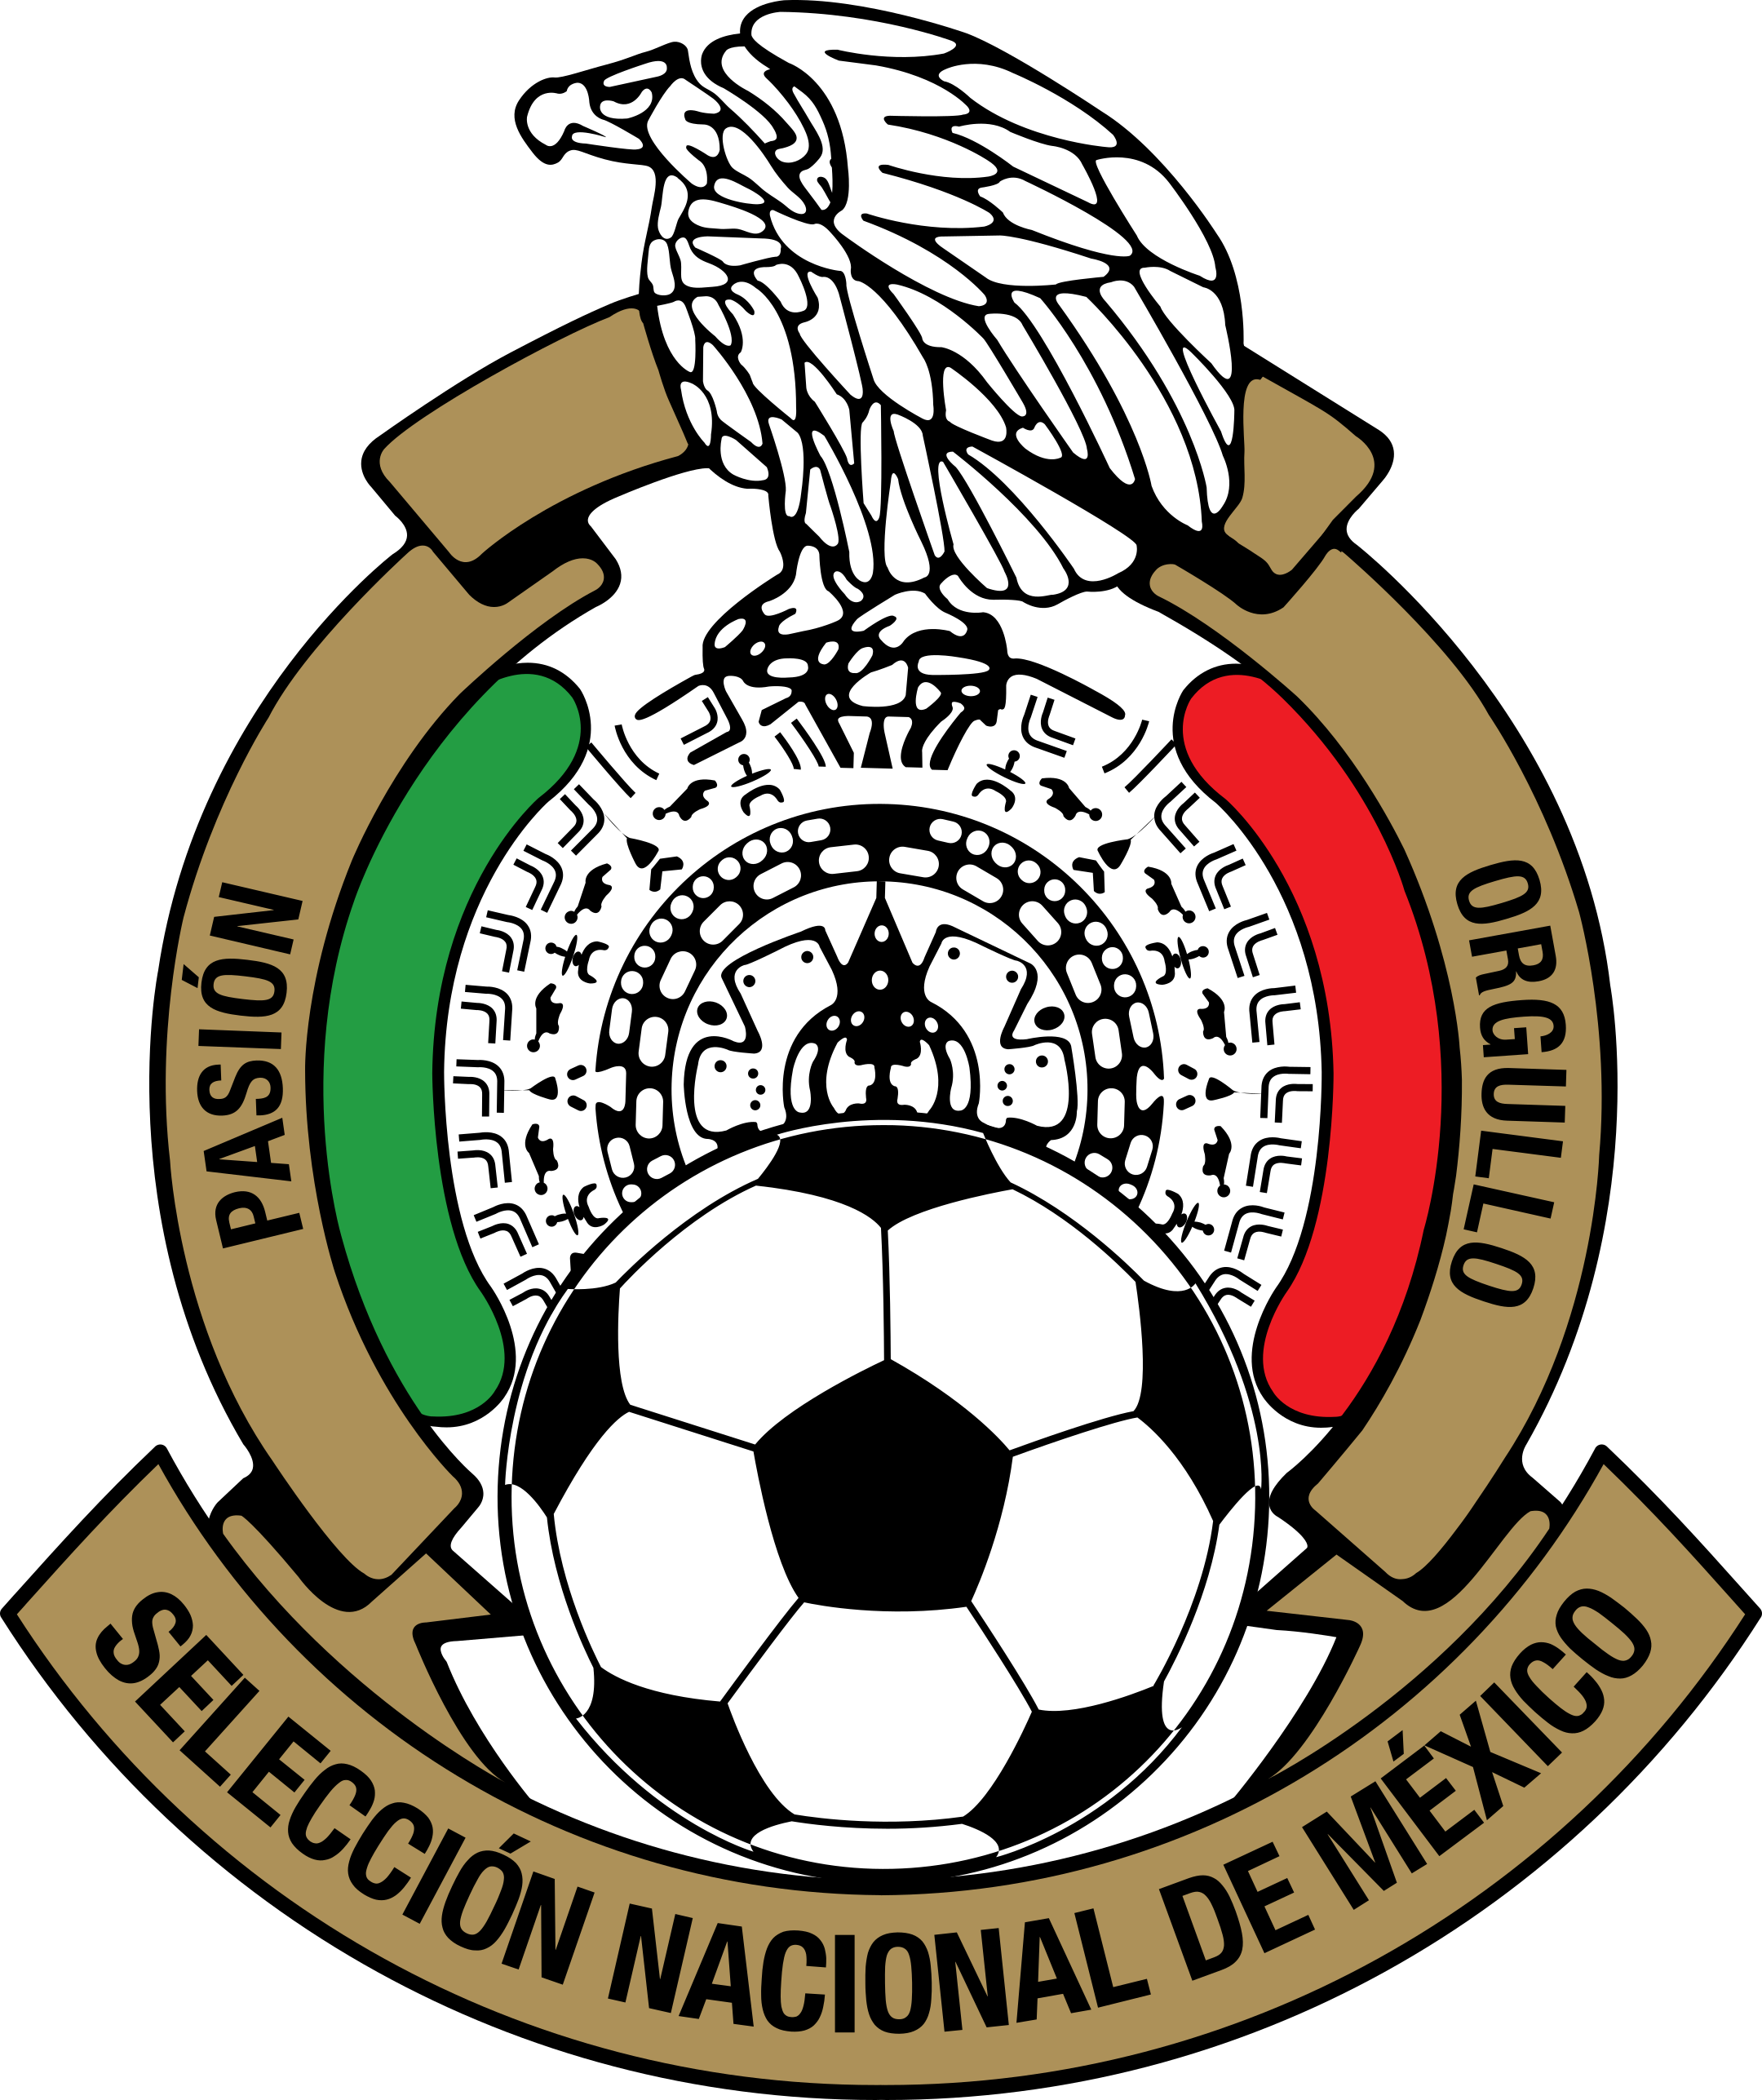 fmf seleccion de mexico logo 1 - Équipe du Mexique de Football Logo